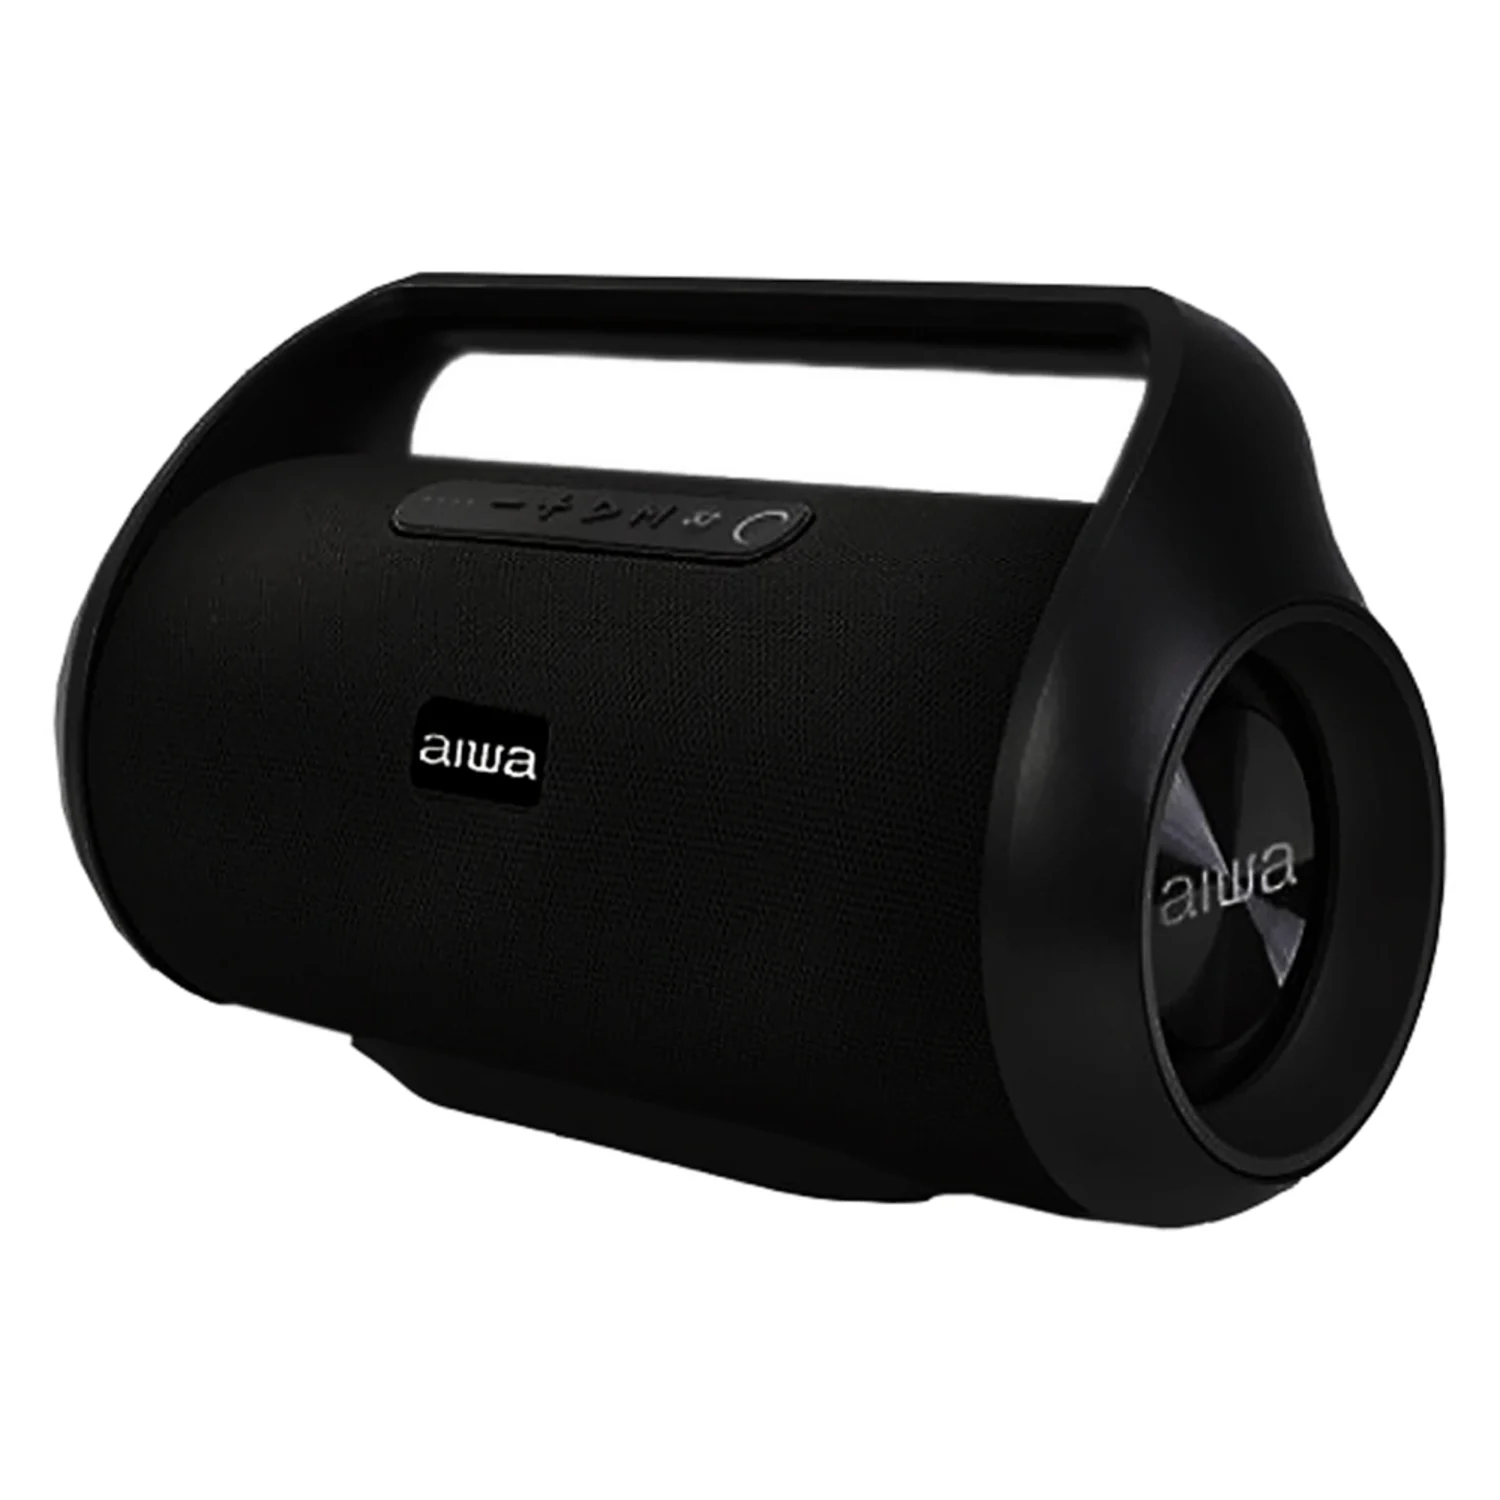 Caixa de Som Aiwa AW-S800BT Bluetooth / USB / FM / AUX - Preto